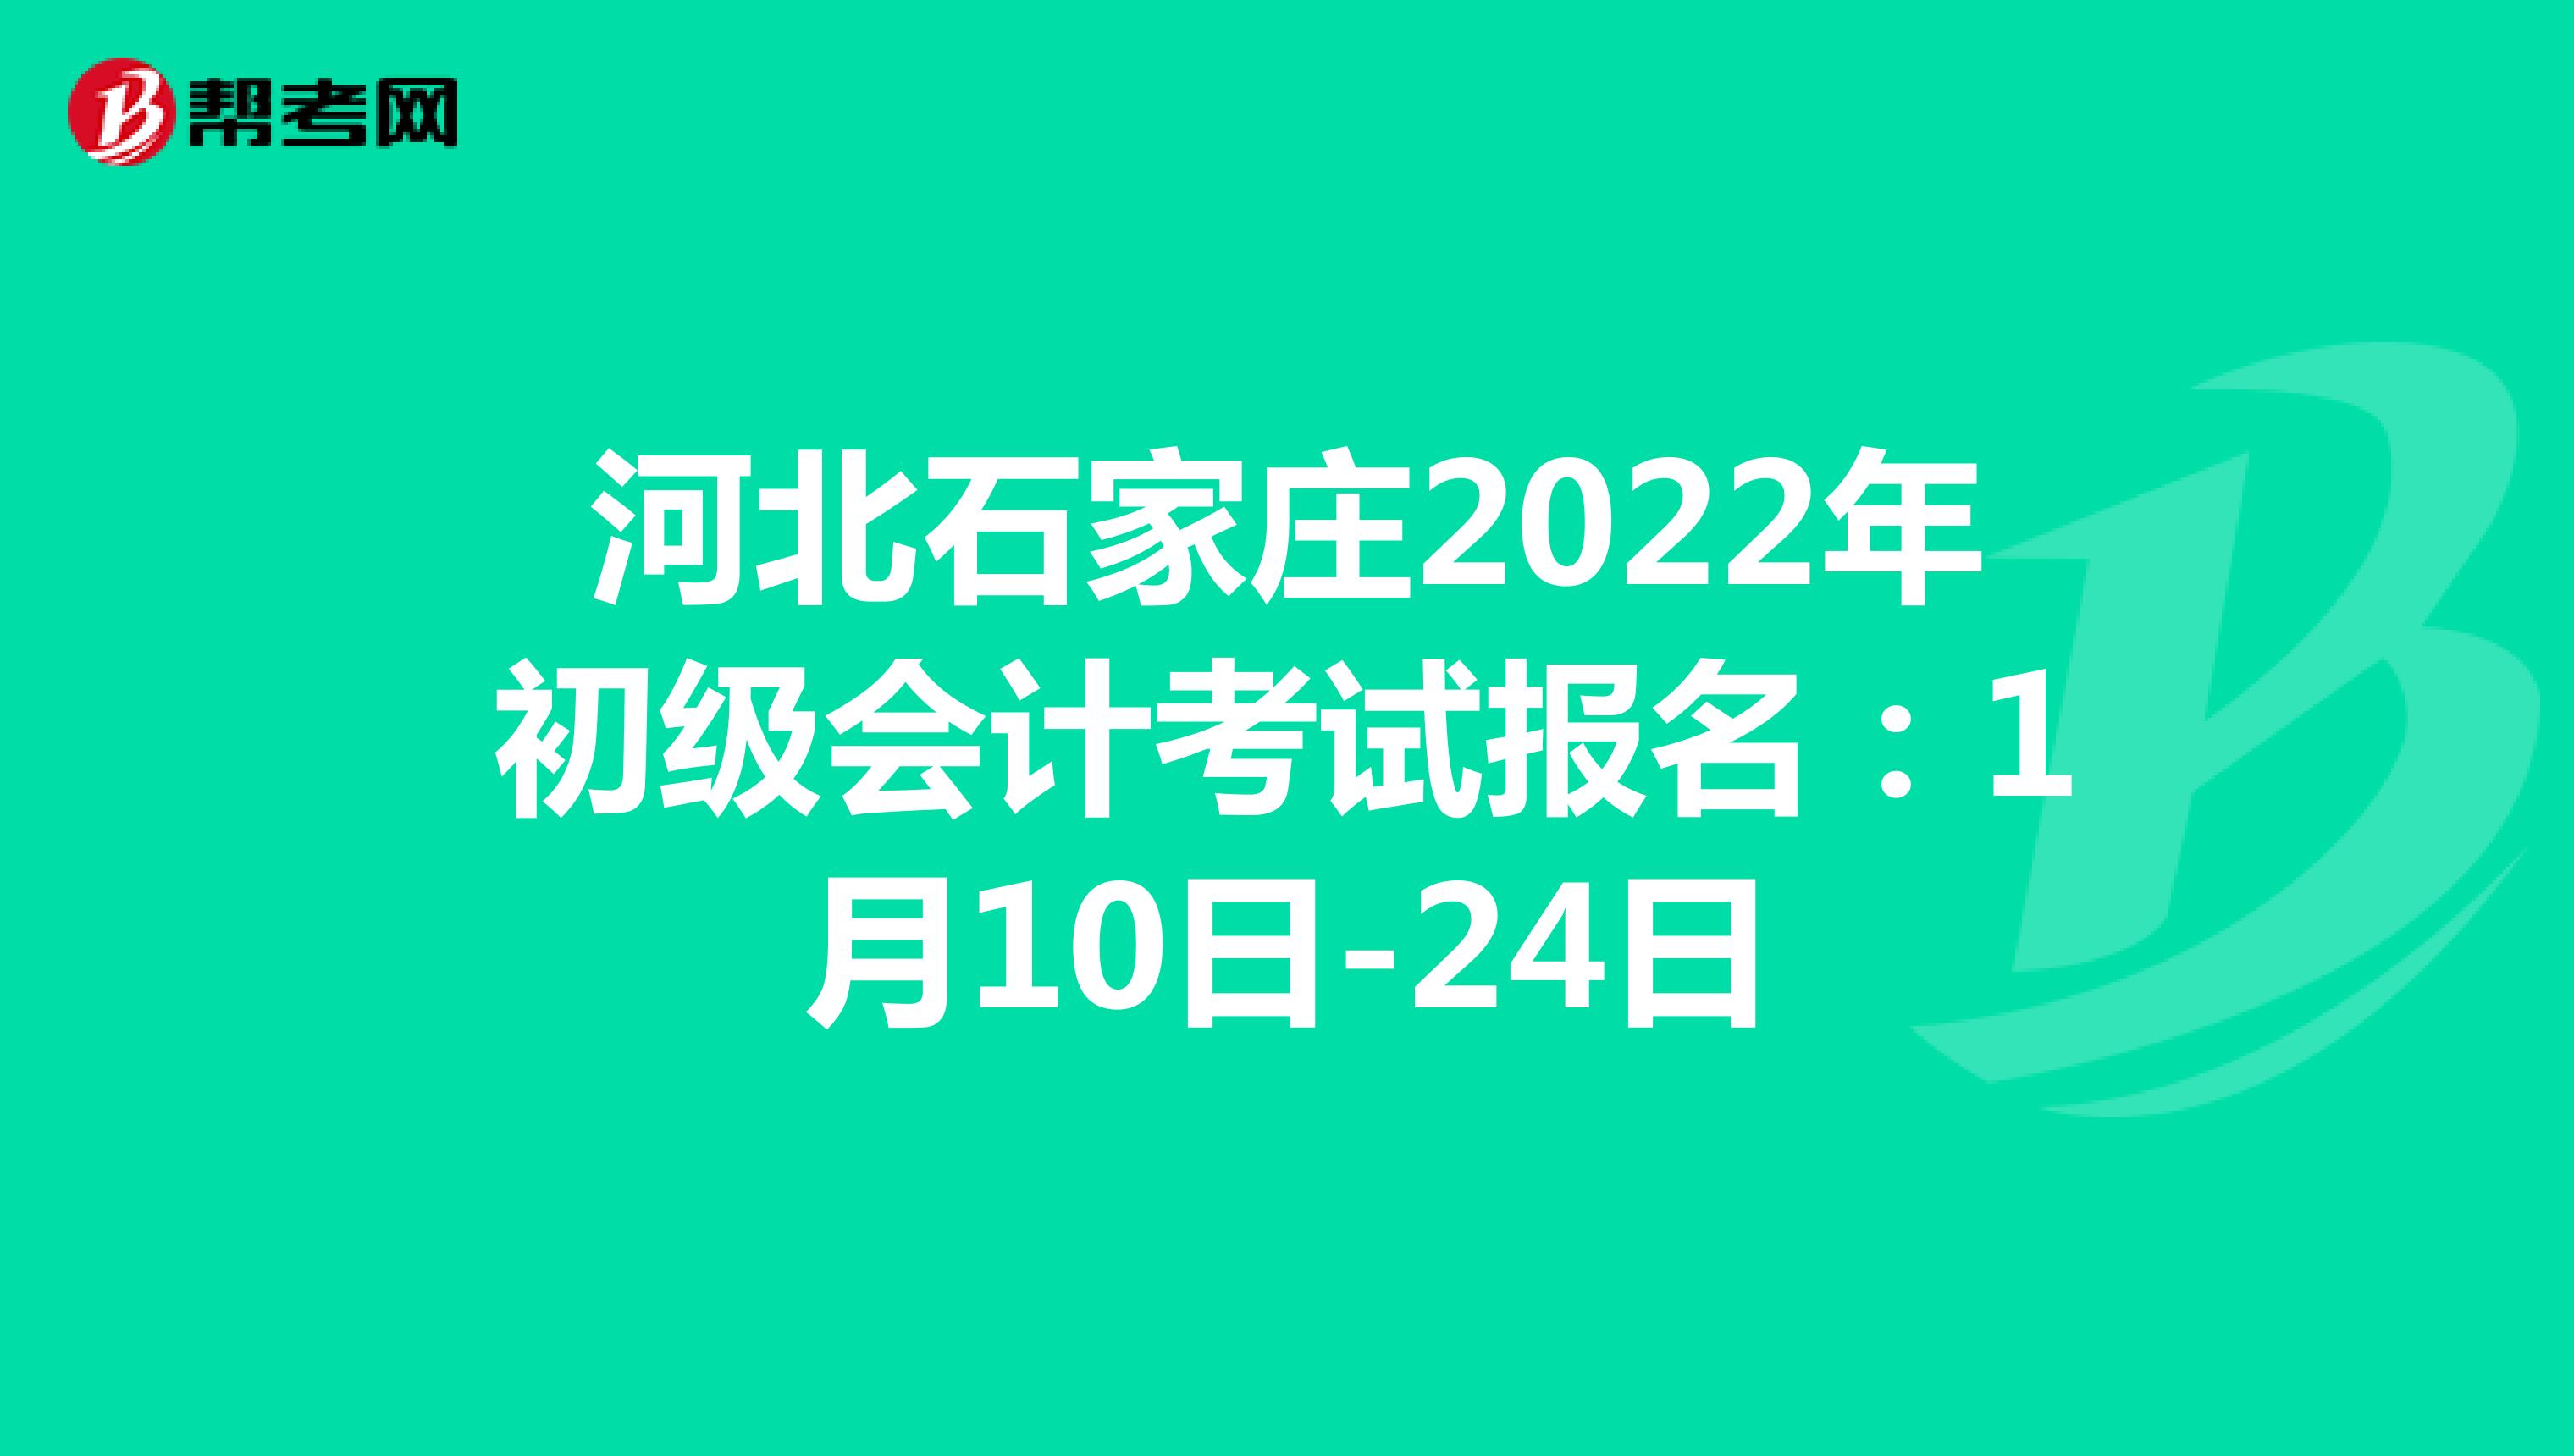 河北石家庄2022年初级会计考试报名：1月10日-24日